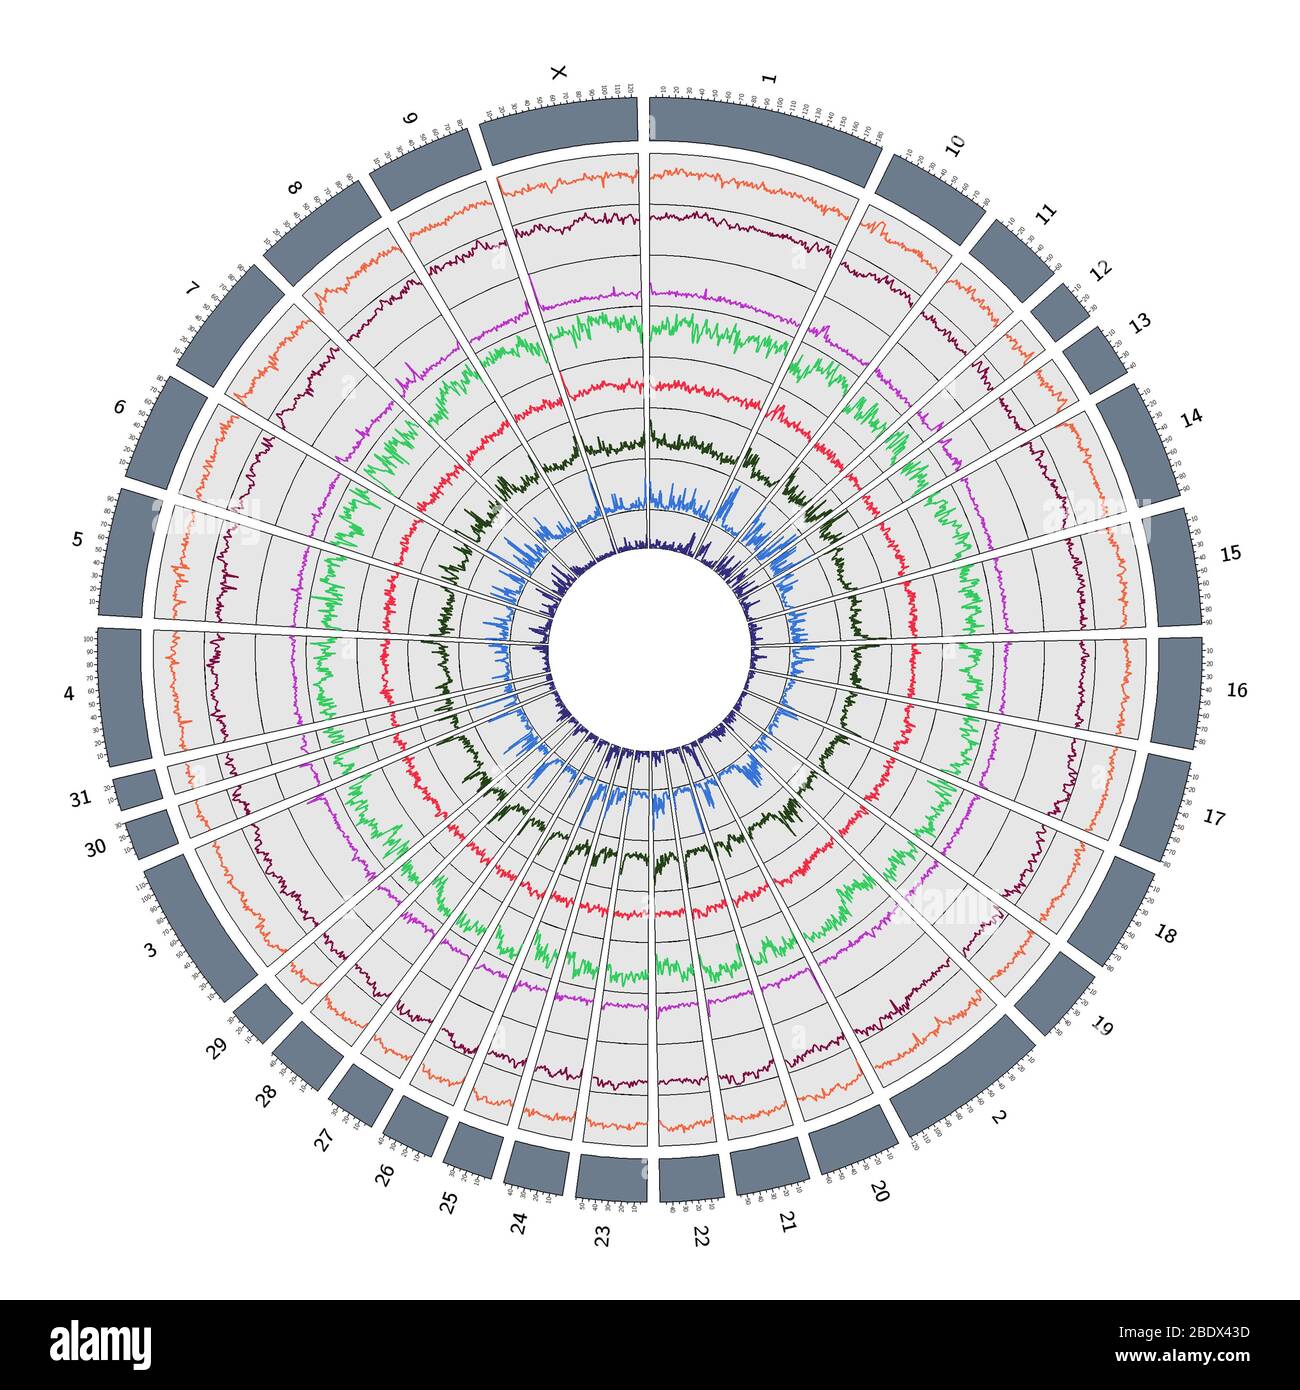 Circos, Circular Genome Map, Horse Stock Photo